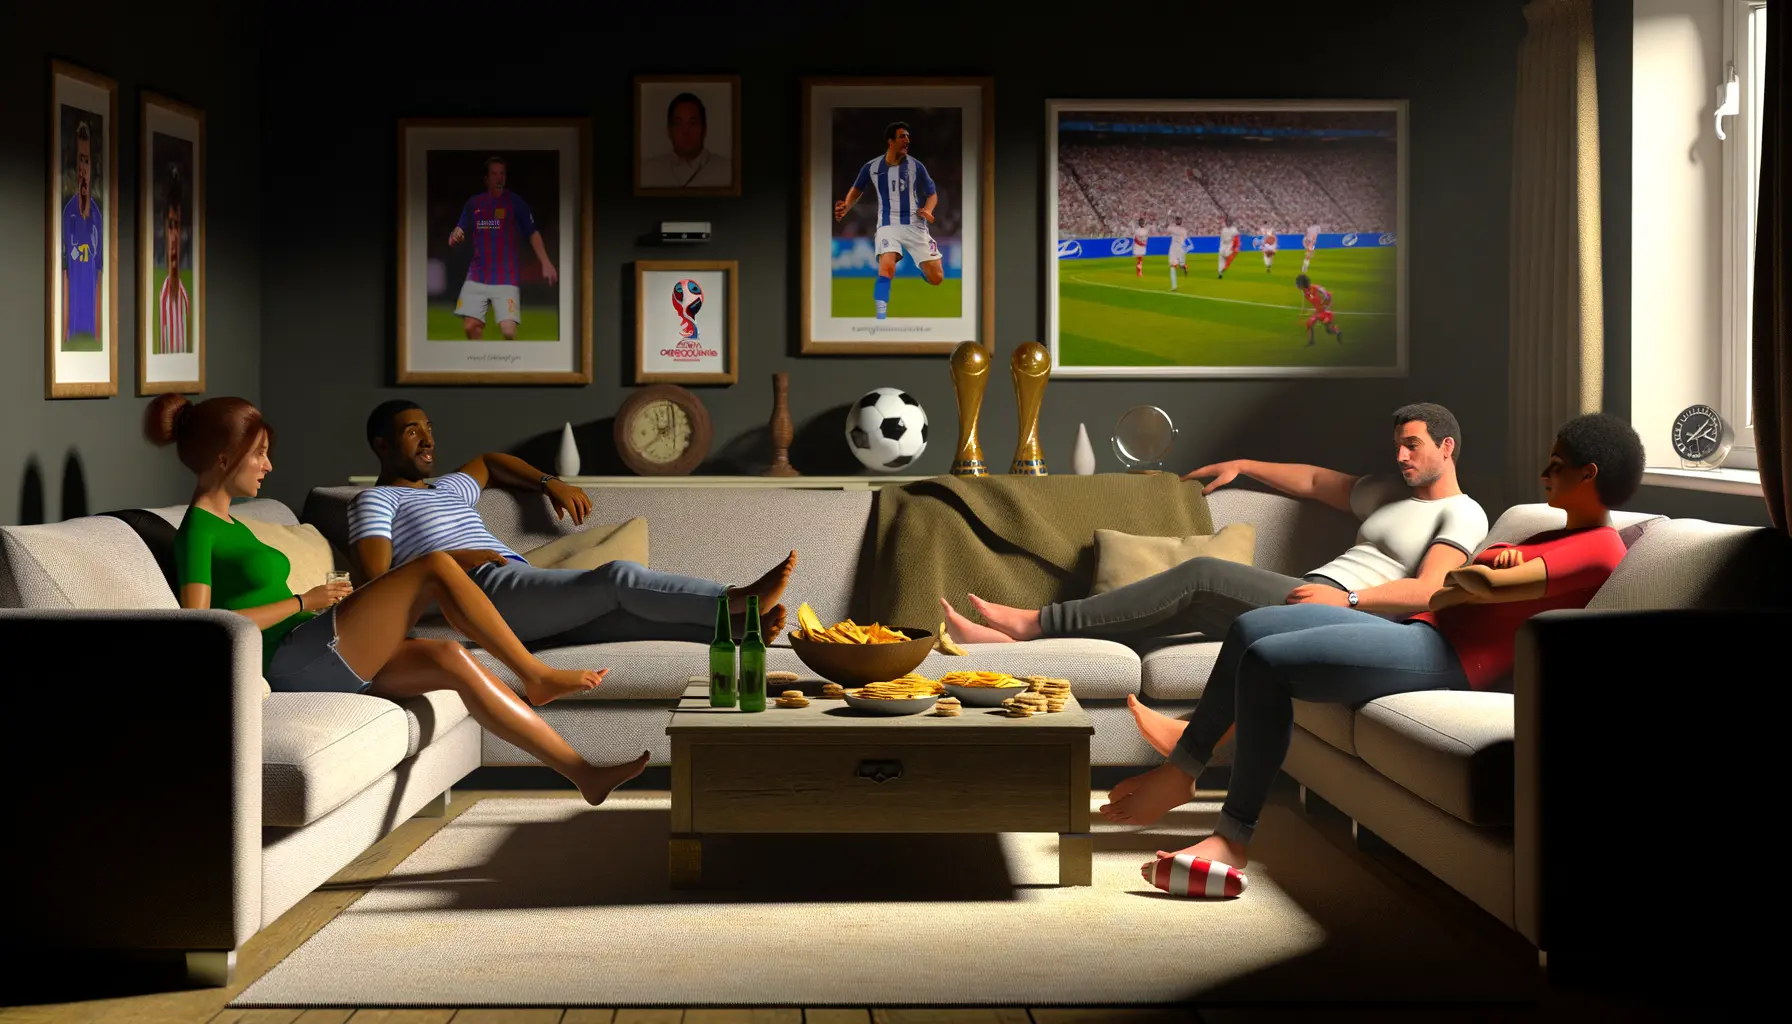 Persönliches Gespräch über Fußball im Wohnzimmer